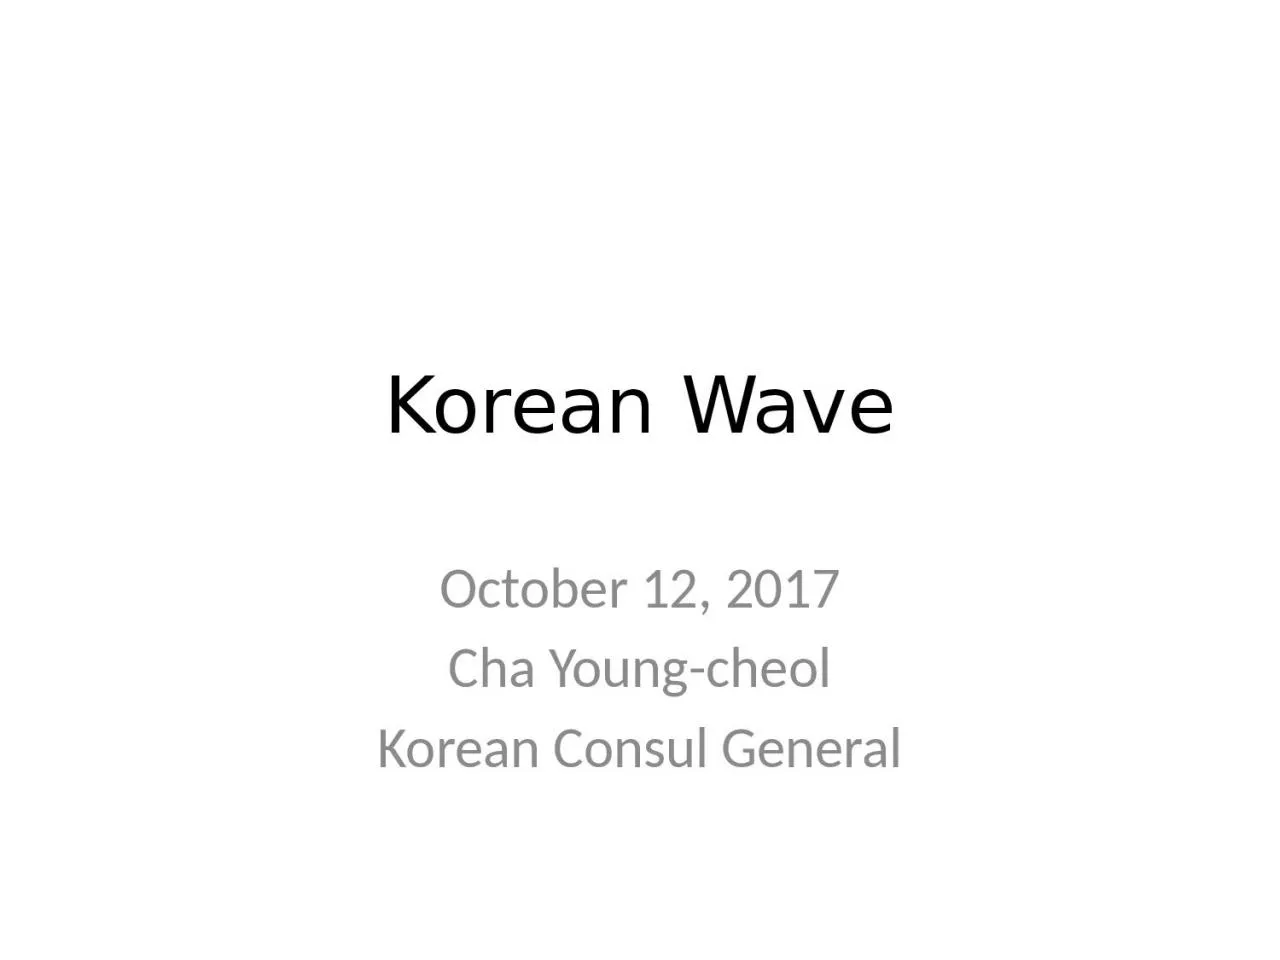 Korean Wave October 12, 2017